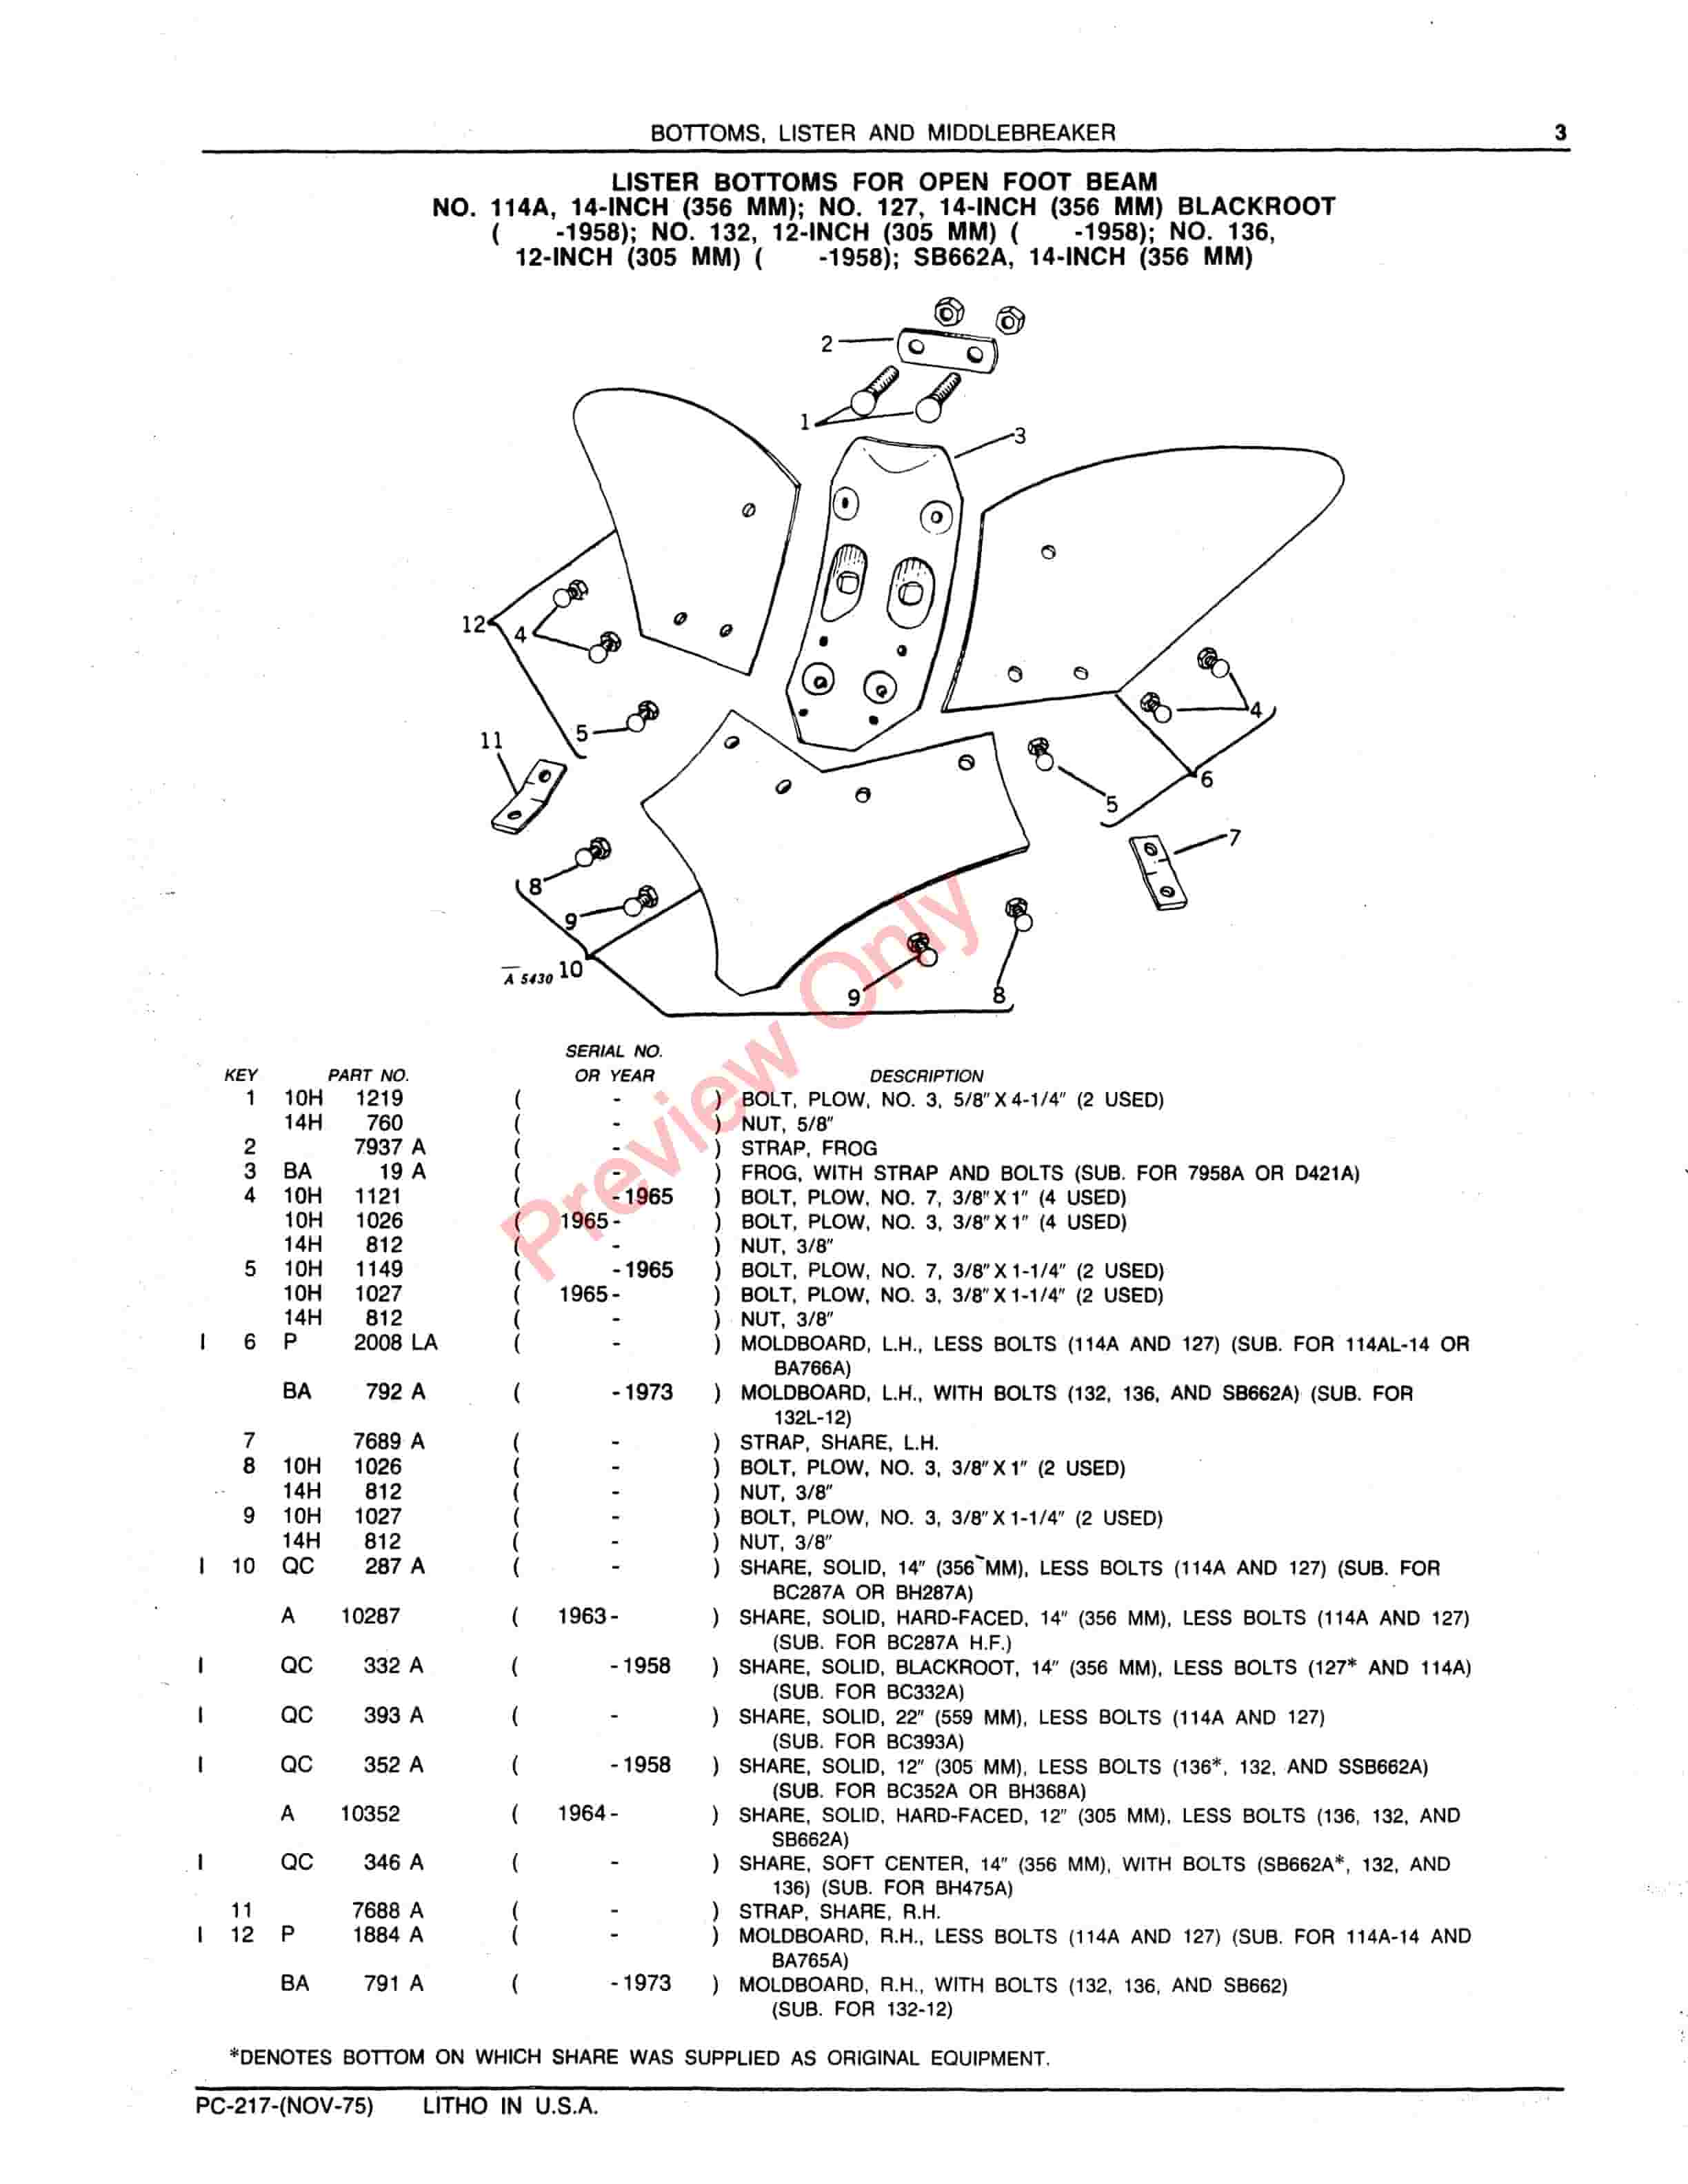 John Deere Bottom Lister, Middlebreaker Plows Parts Catalog PC217 01NOV75-5